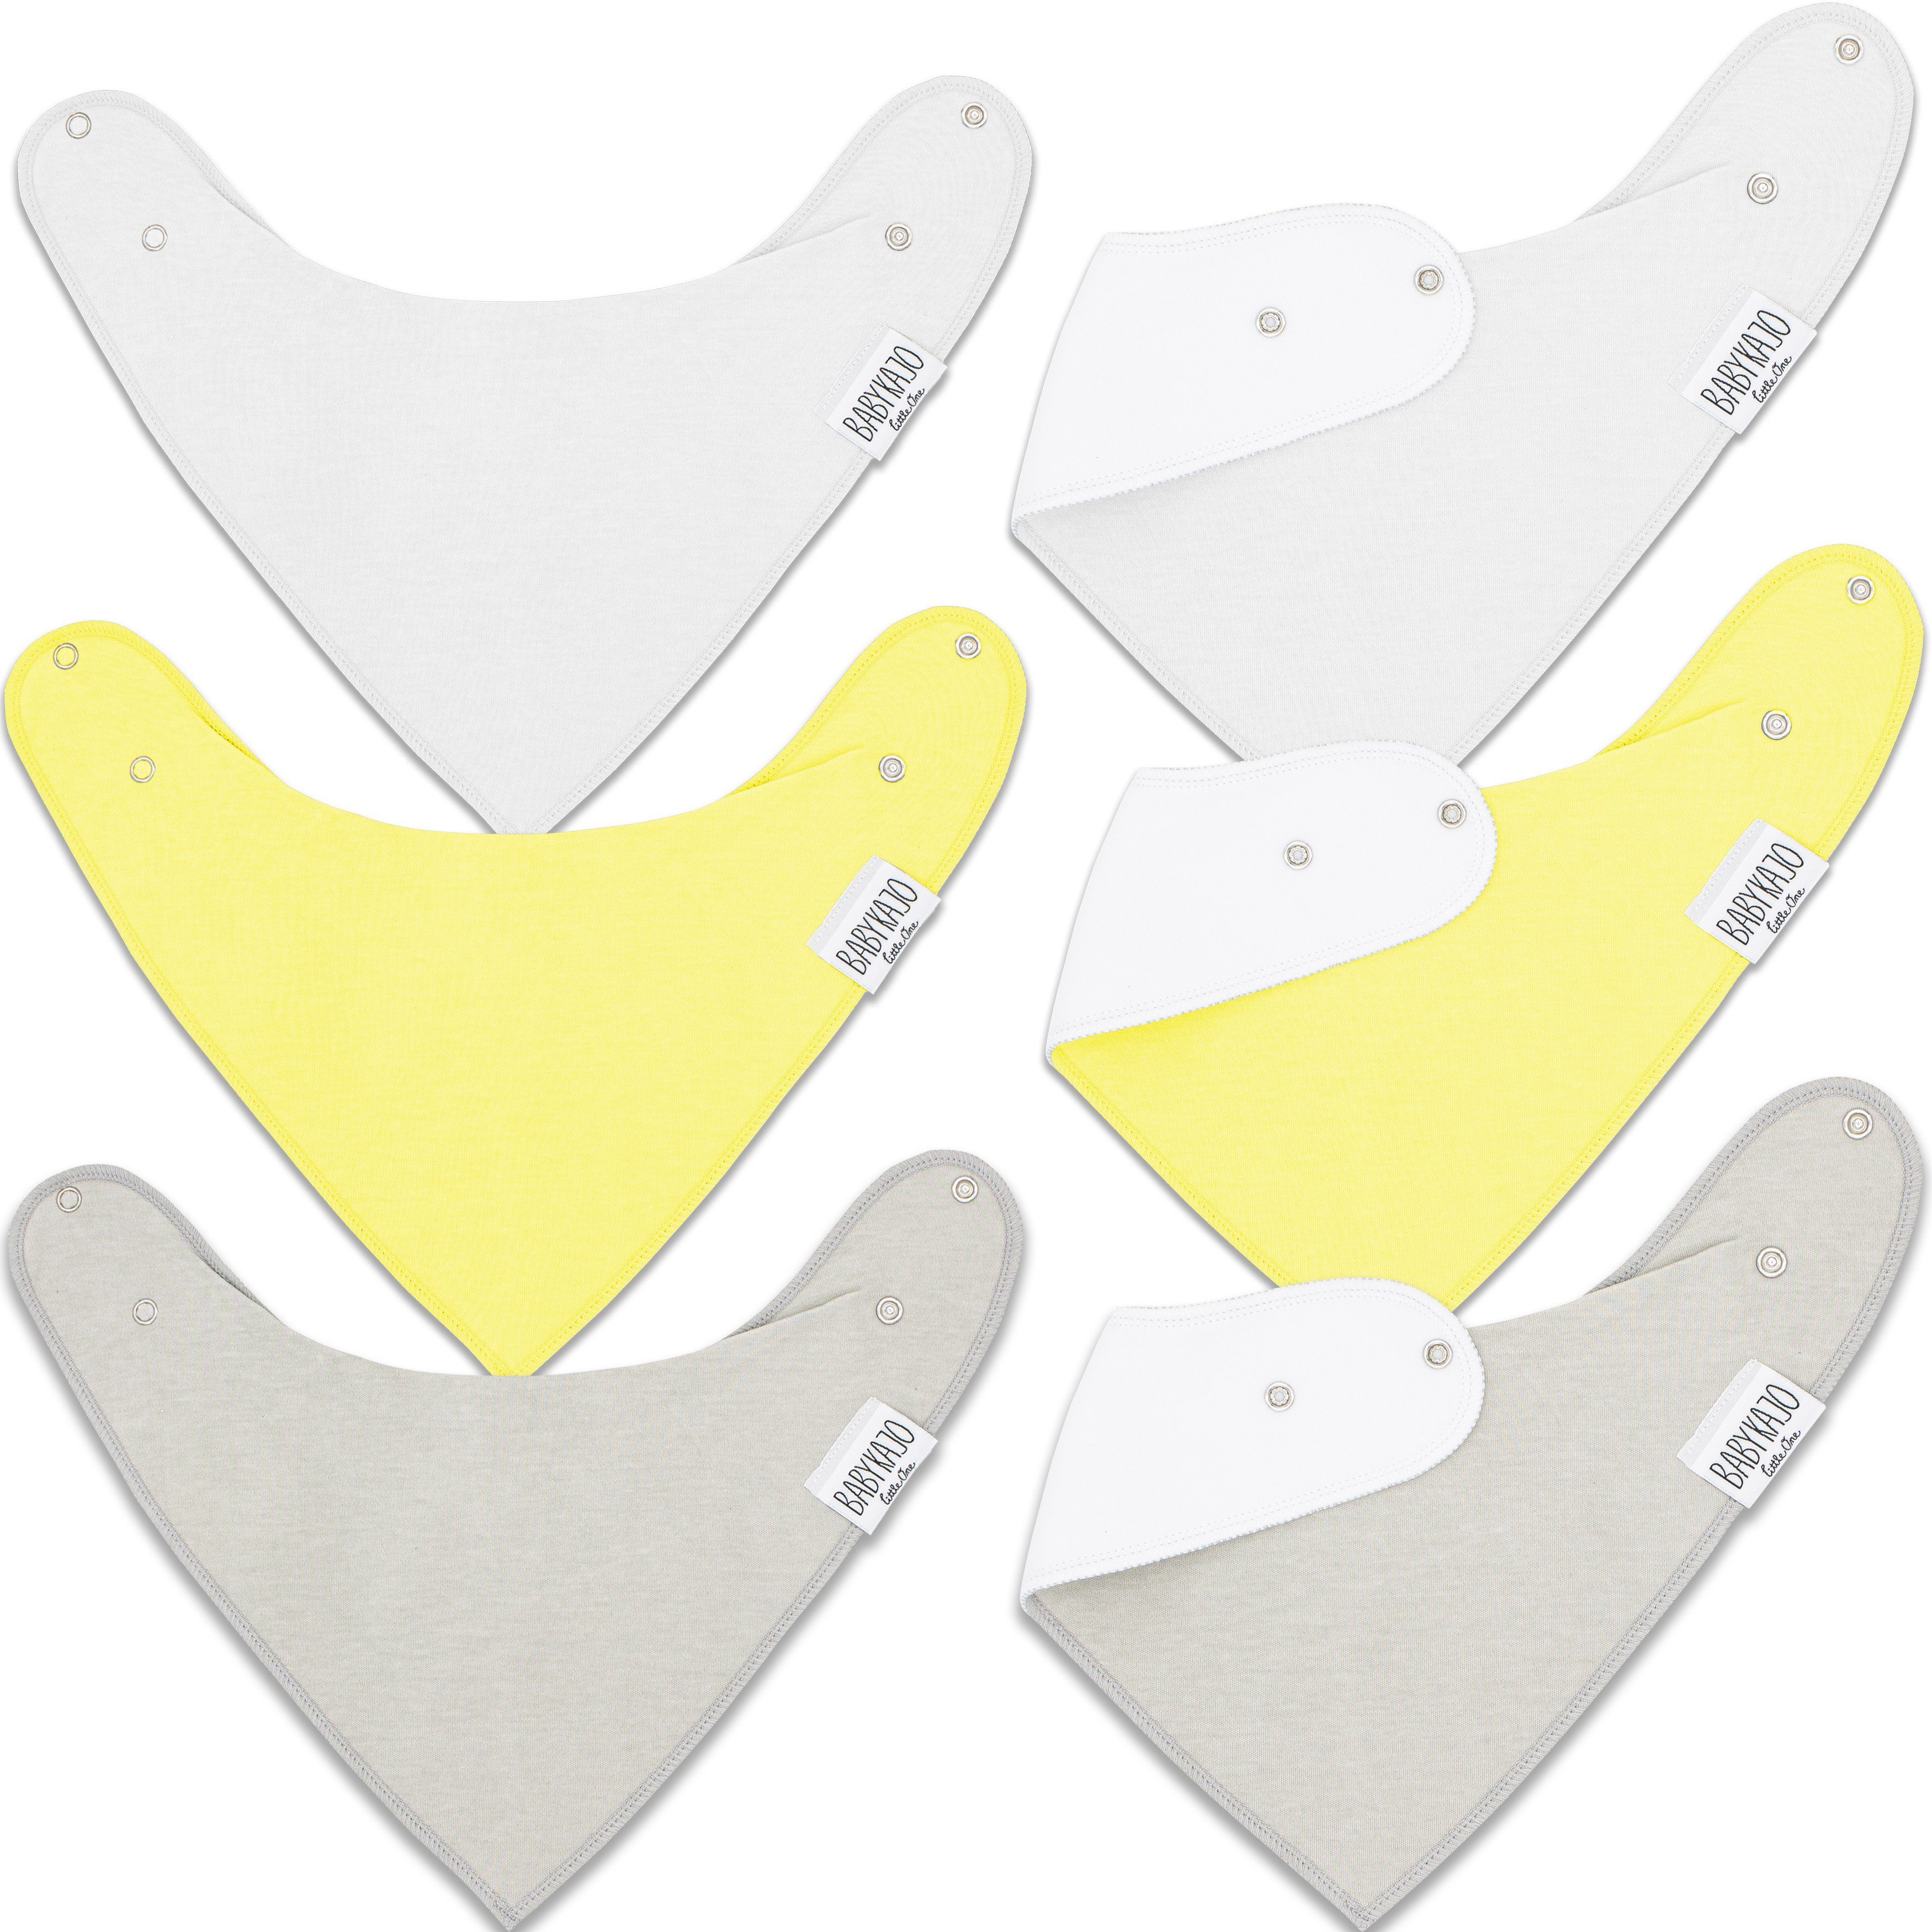 grau-gelb-weiß Halstuch weichem aus Material Sabbertuch), Lätzchen, Babykajo (6-St.,